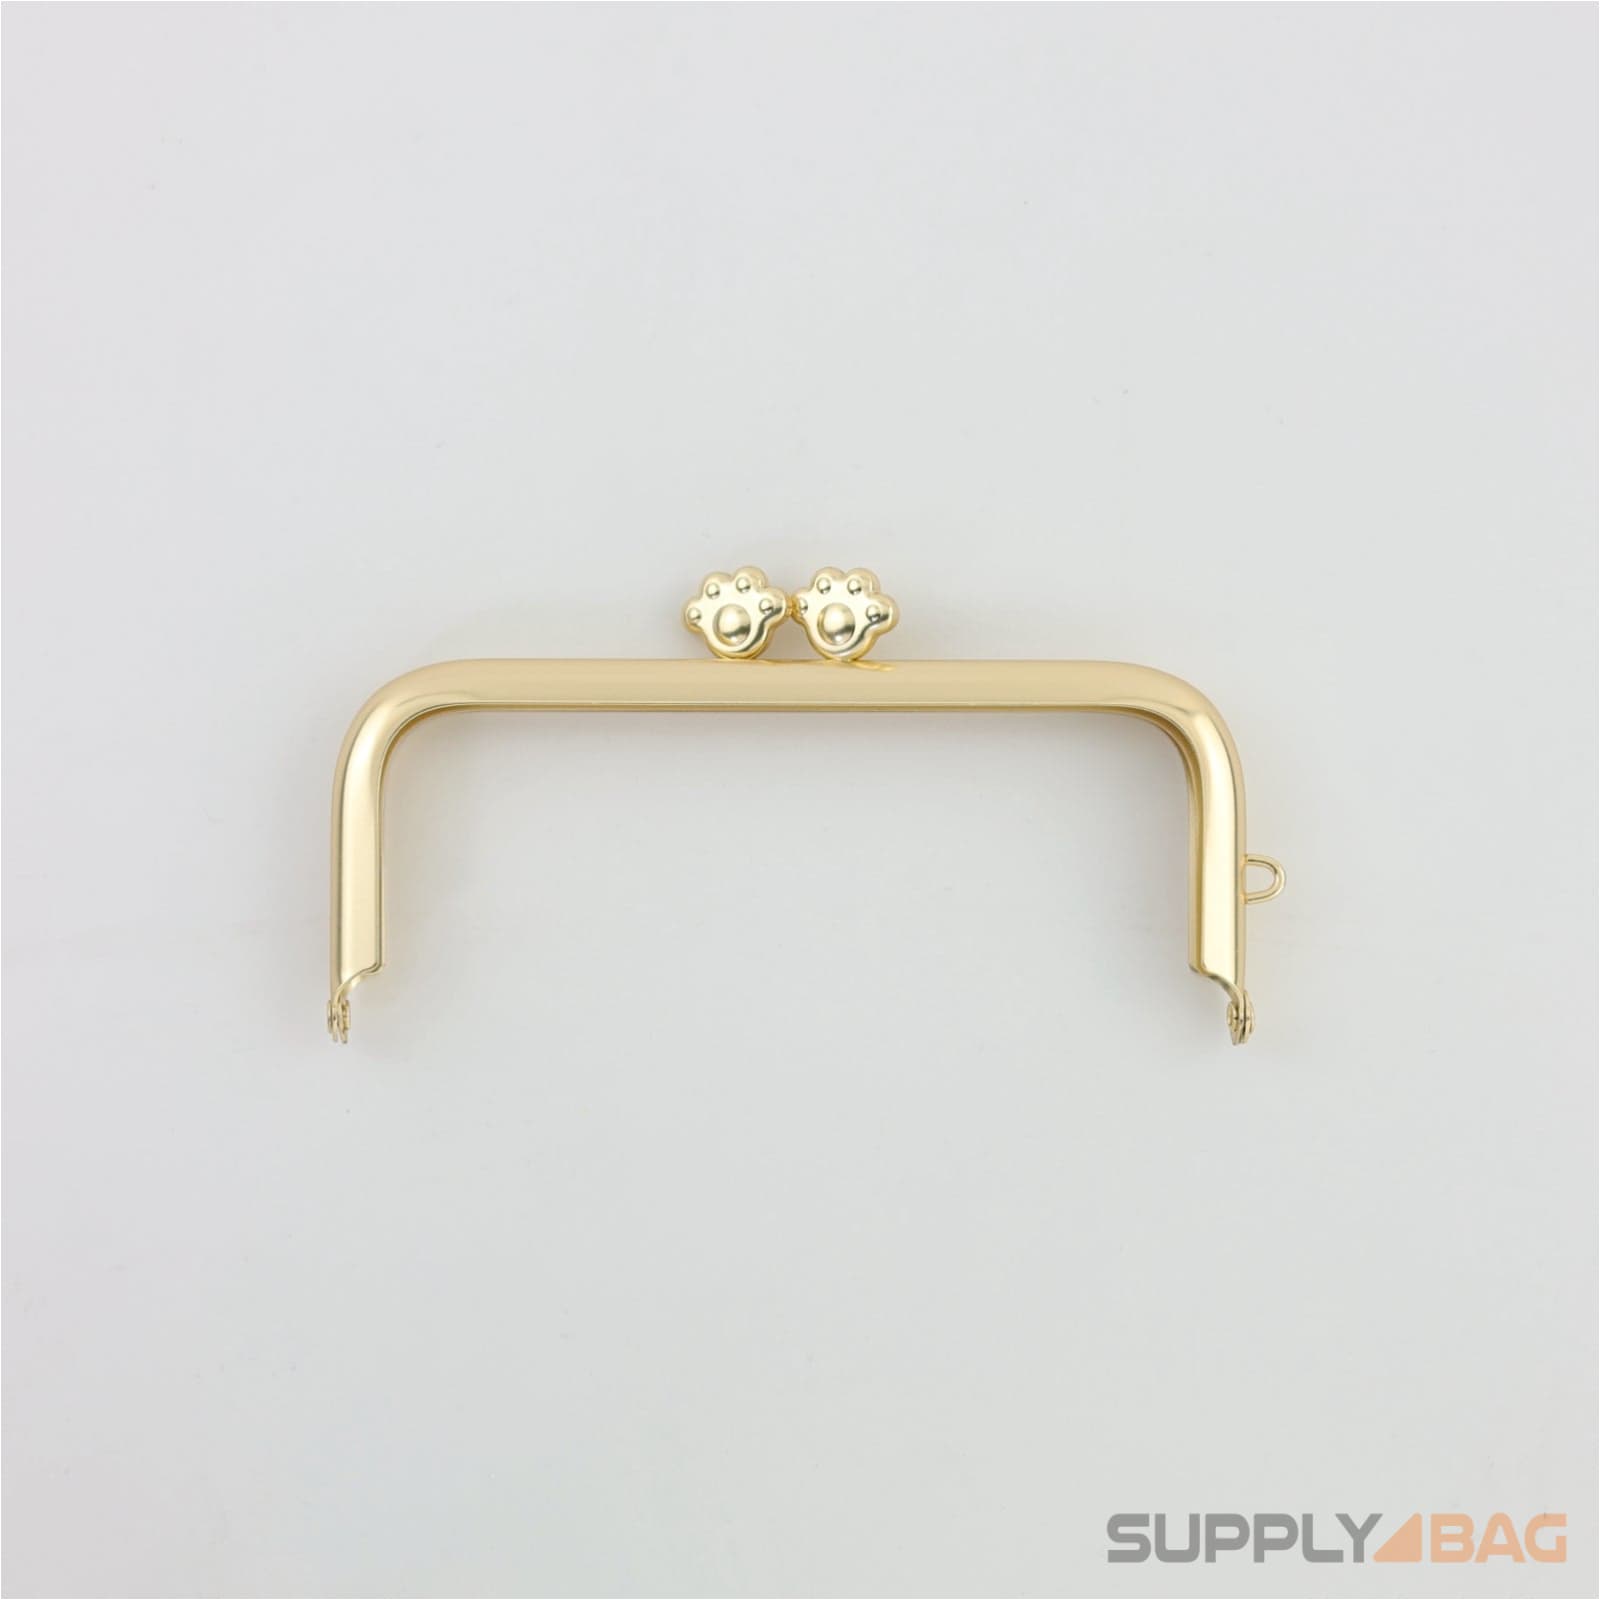 4 1/2 x 2 inch - pet footprint clasp - matte gold metal purse frame